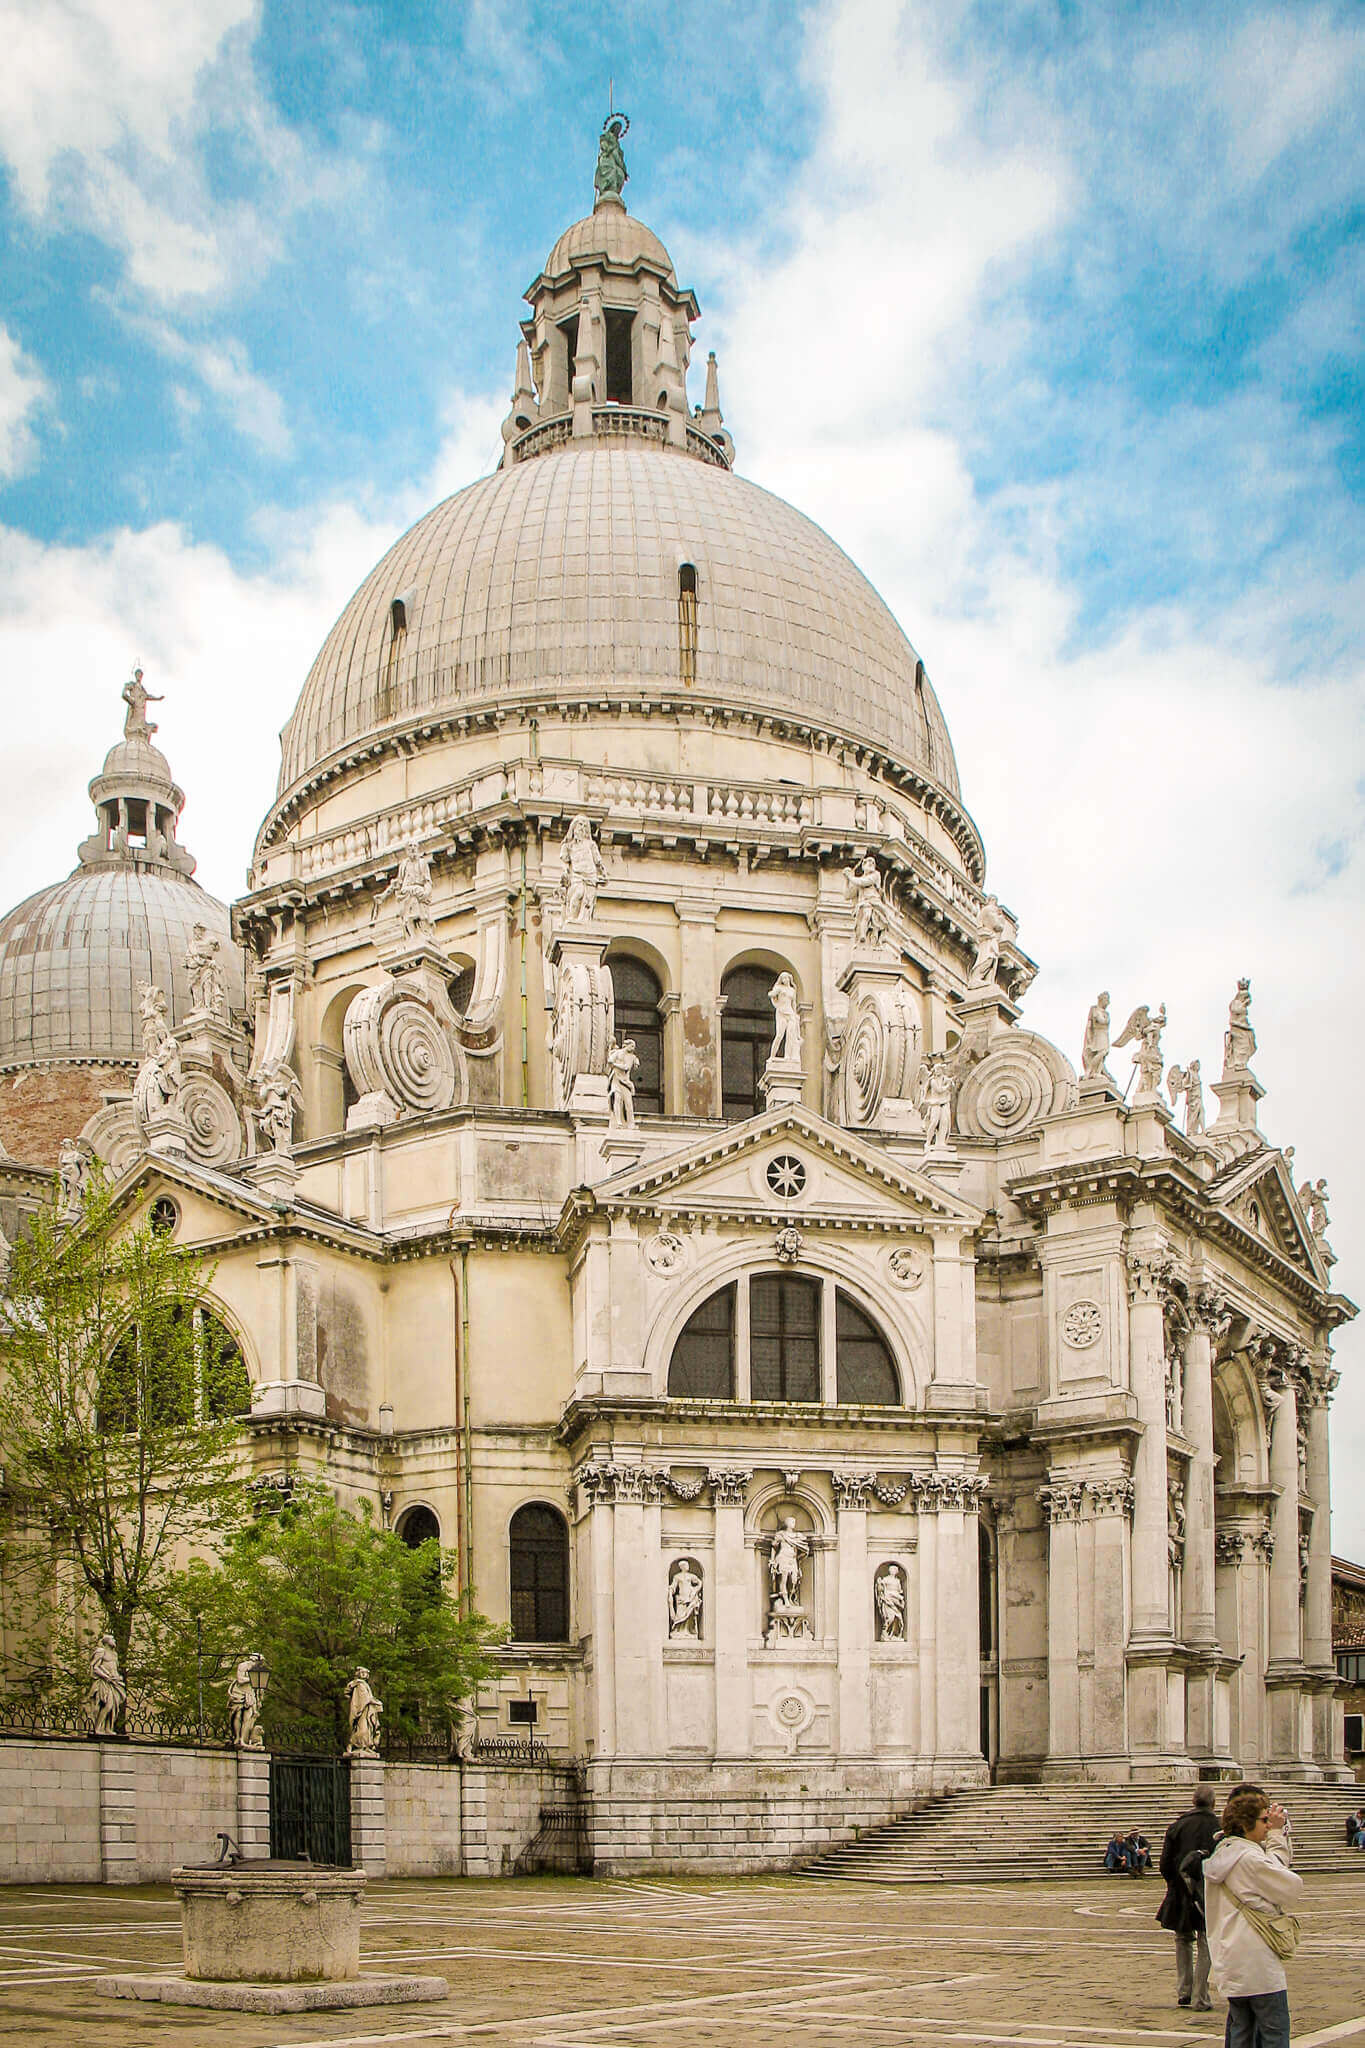 The Santa Maria della Salute basilica in Venice